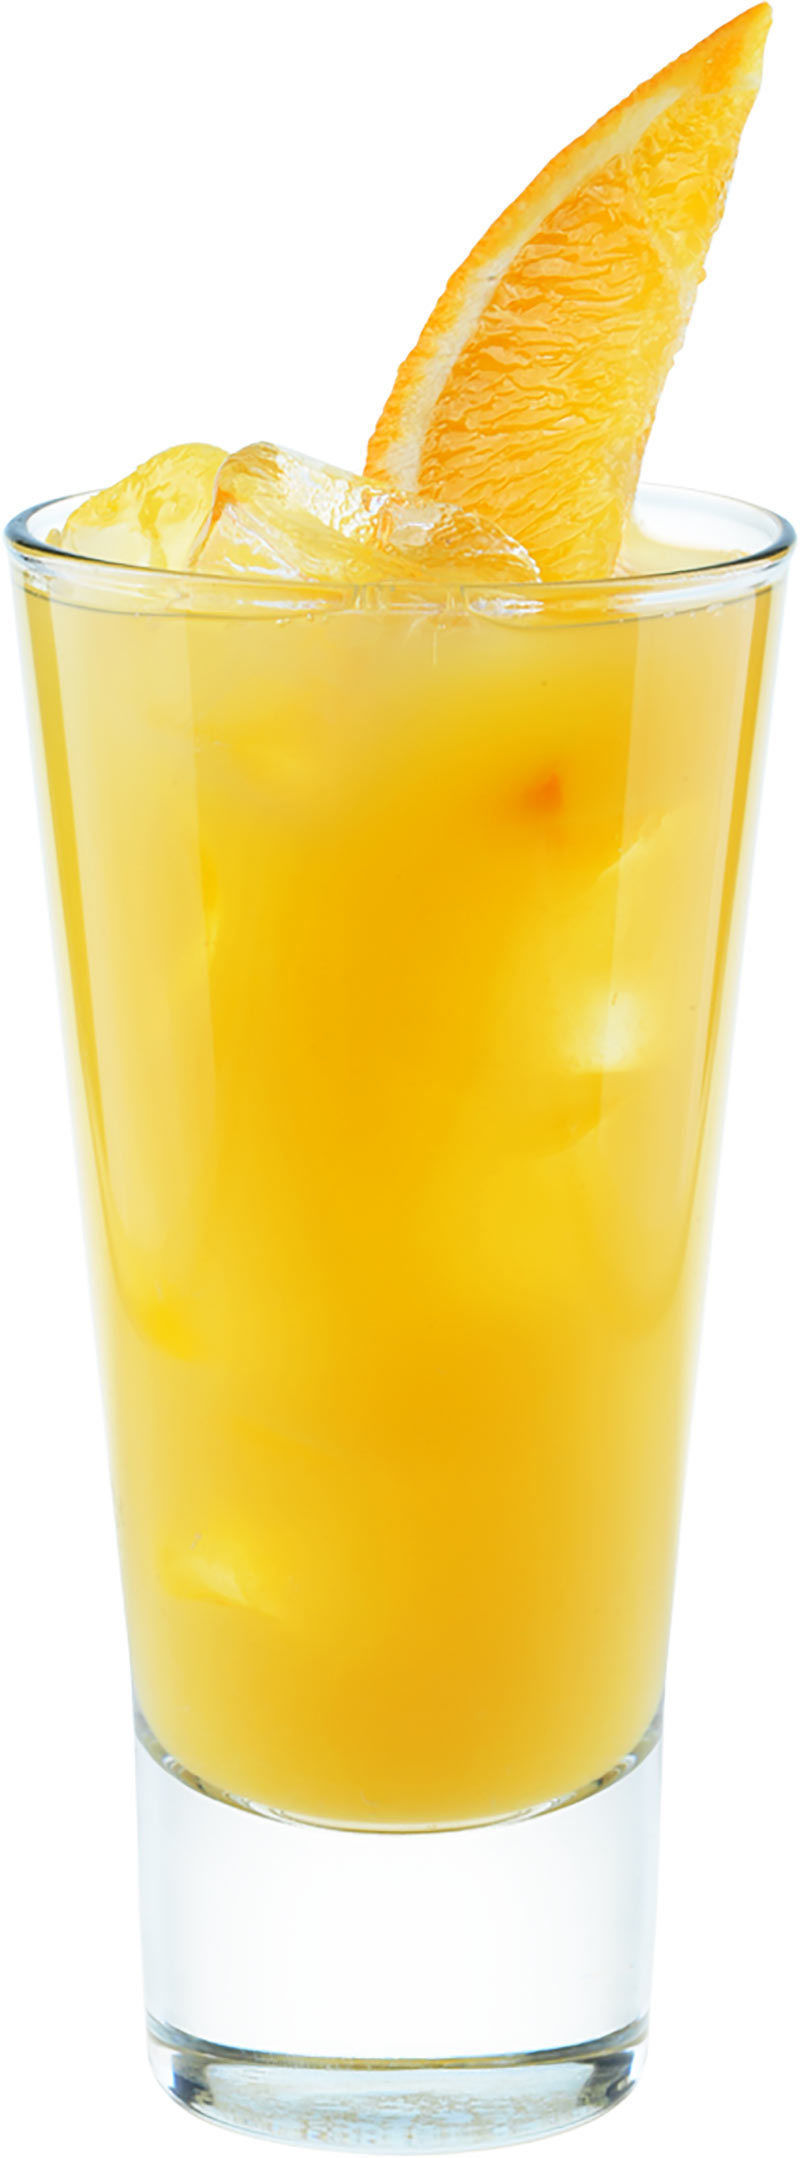 Comment préparer le cocktail Rhum orange